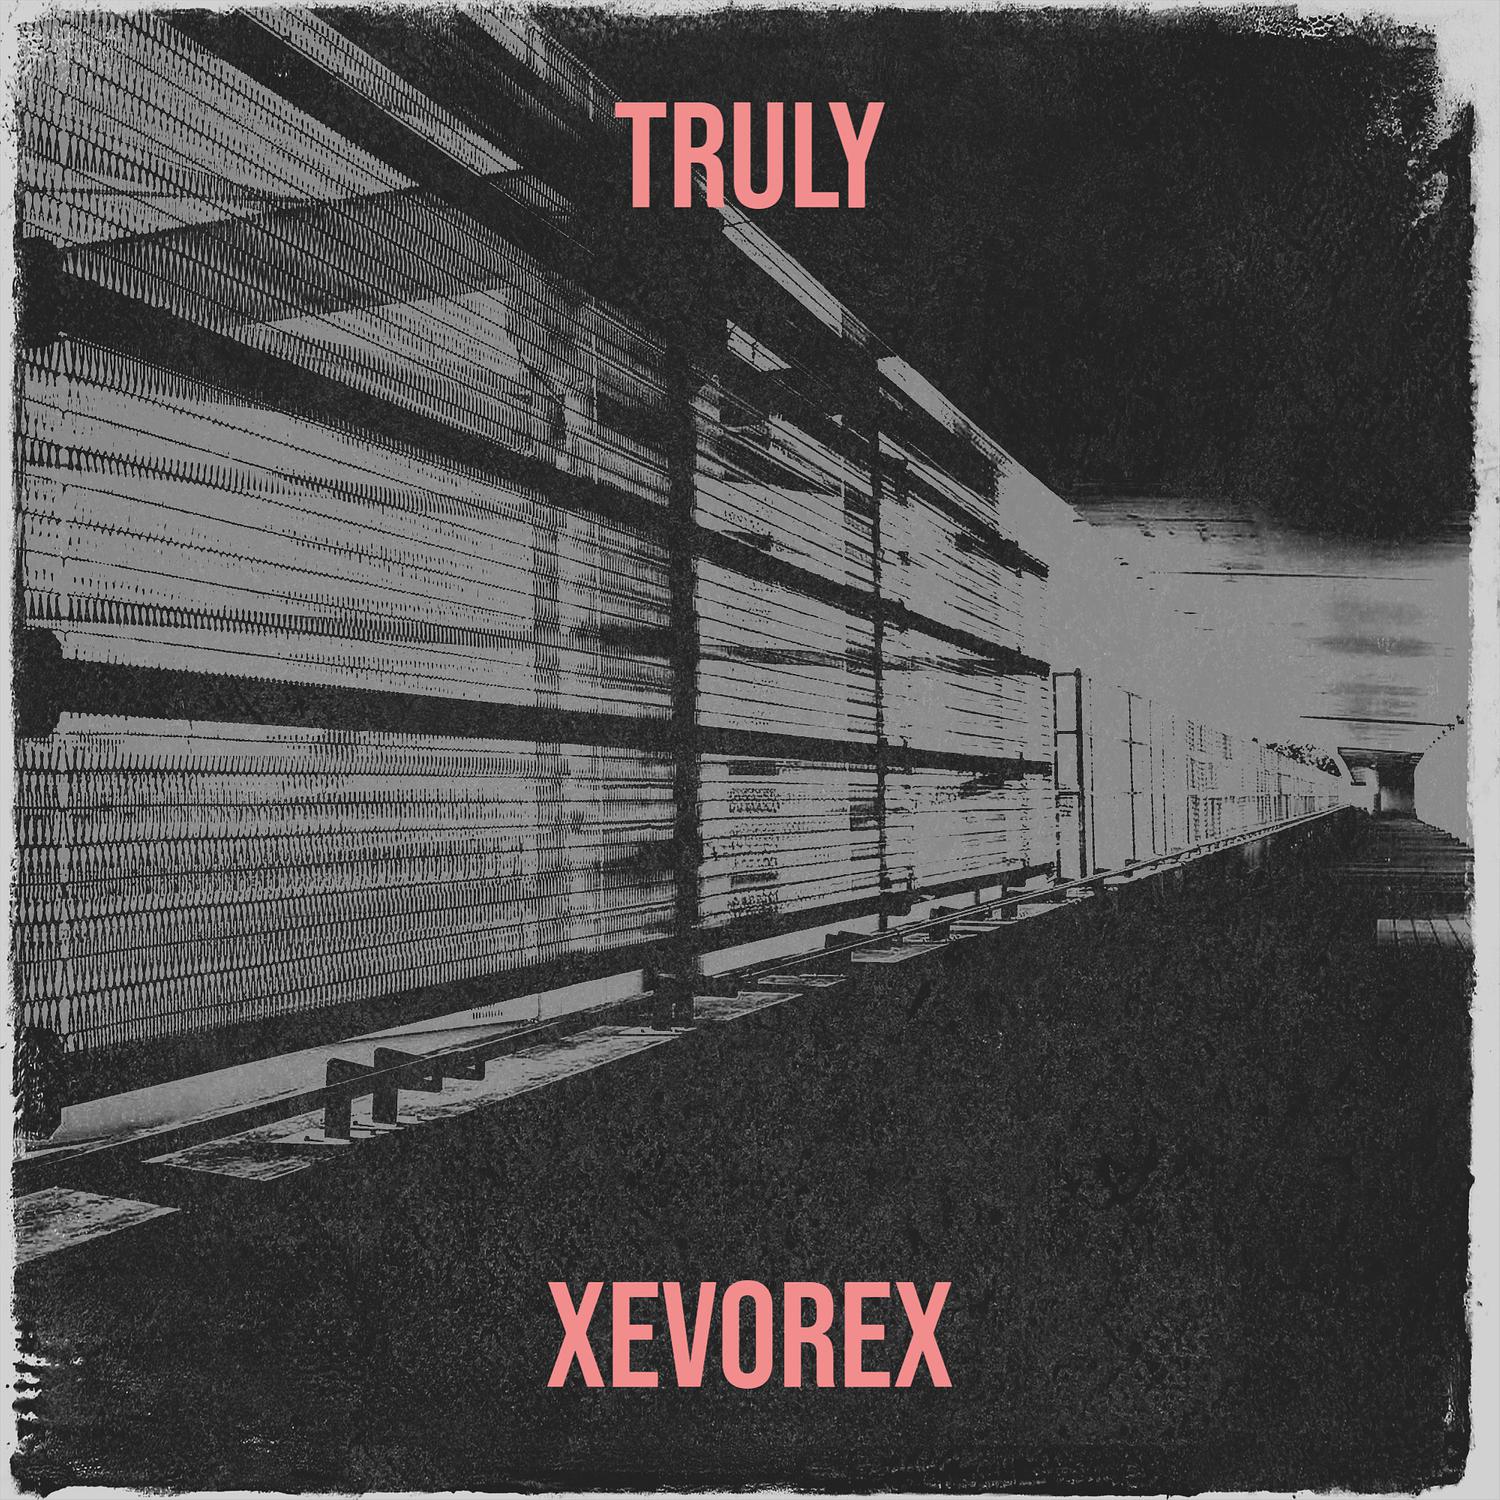 xevorex - Truly